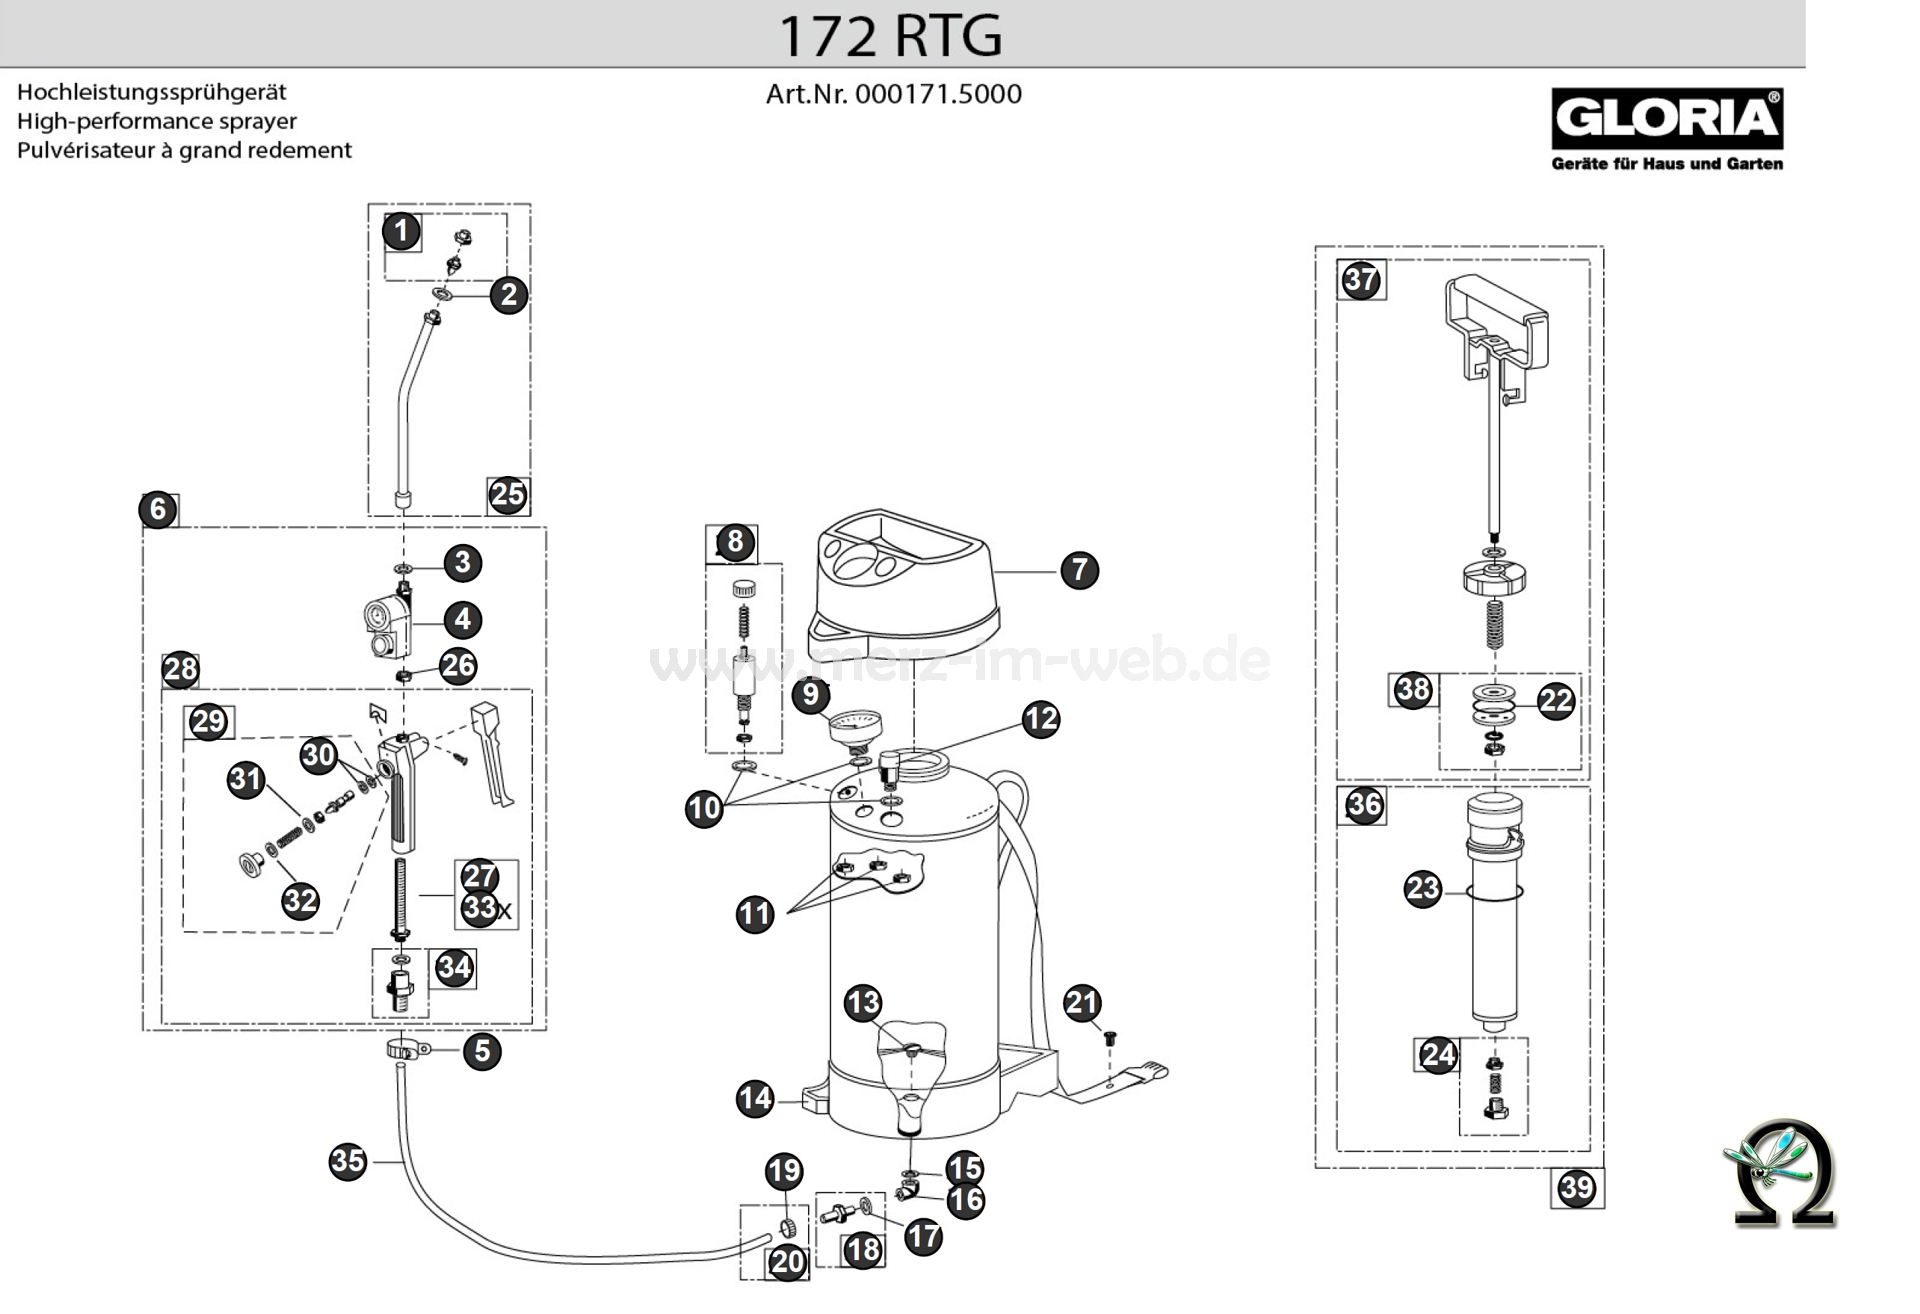 Die Ersatzteilzeichnung mit der Teileliste für das Gloria Hochleistungssprühgerät 172 RTG zum herunterladen und ausdrucken.